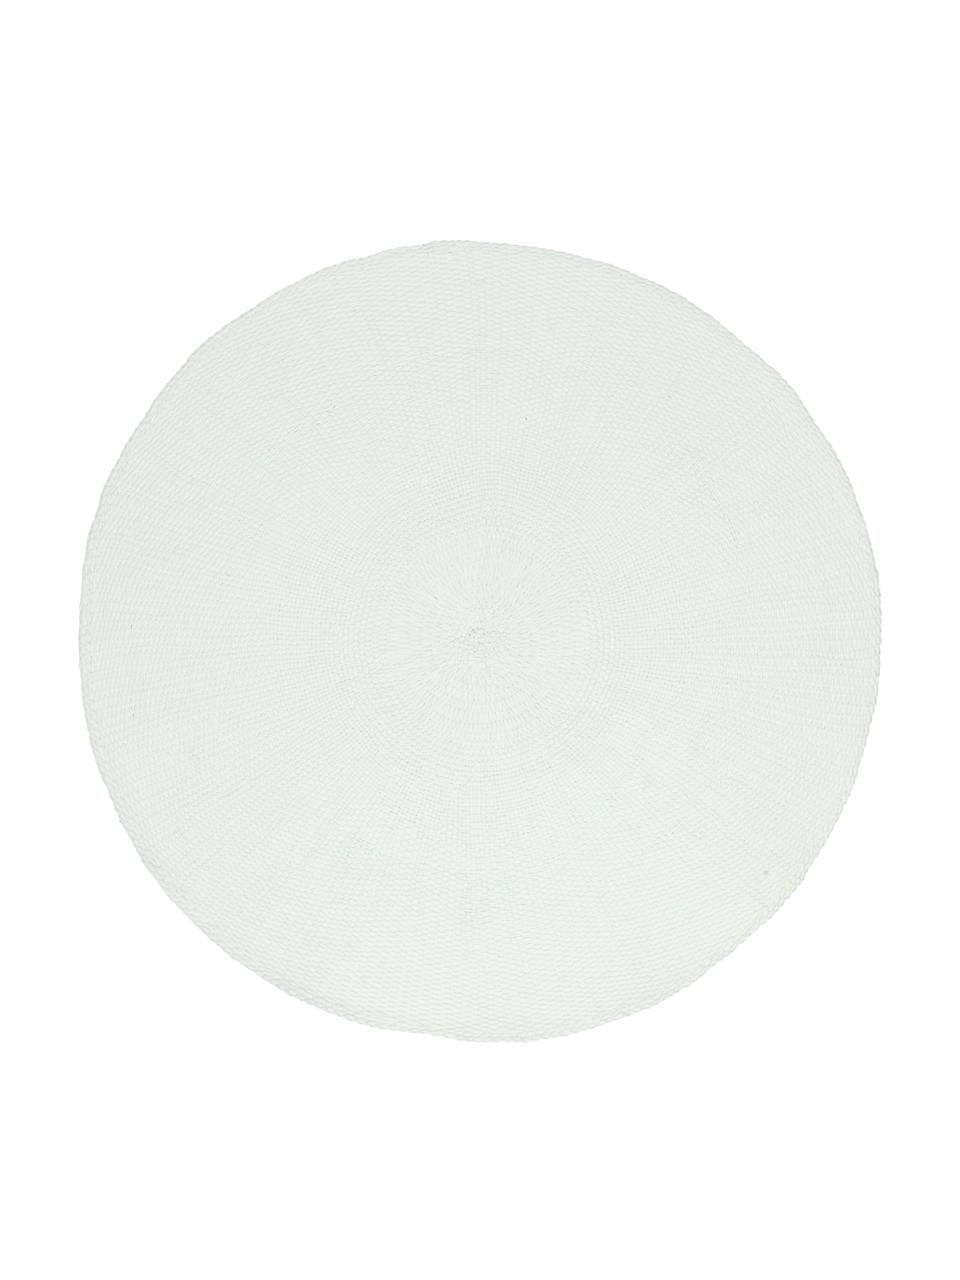 Tovaglietta americana rotonda Kolori 2 pz, Fibre di carta, Bianco, Ø 38 cm